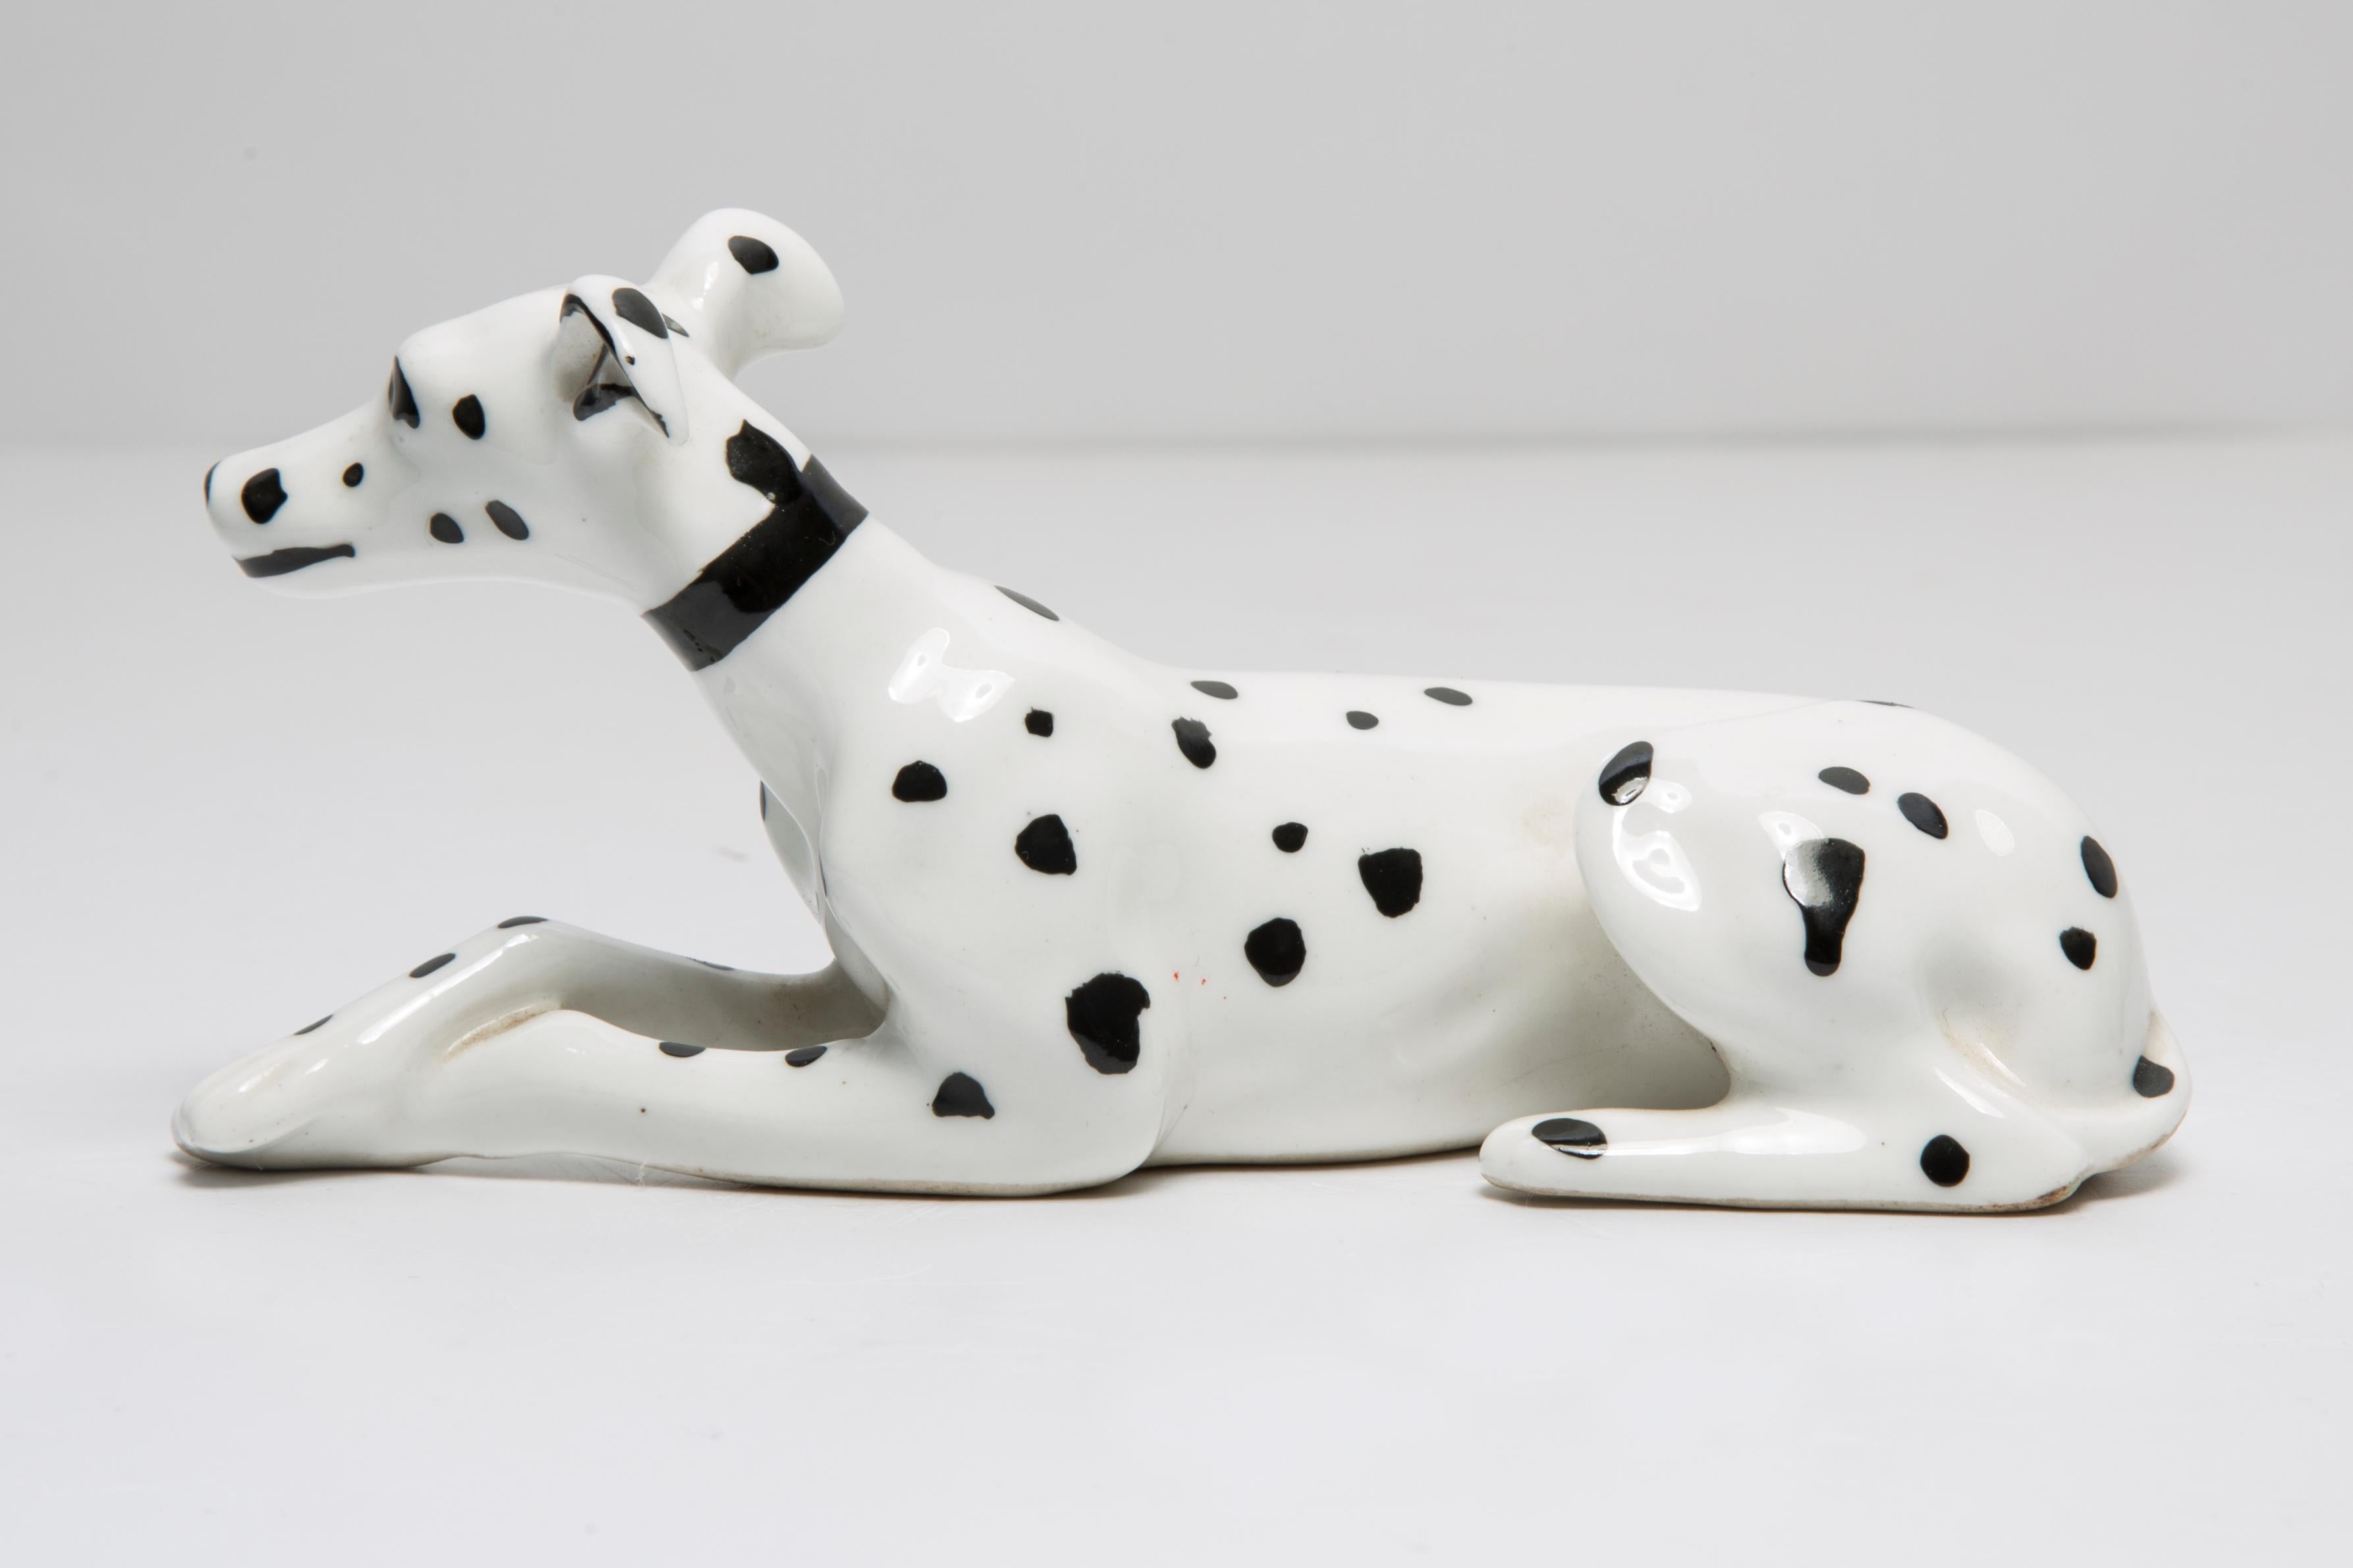 Bemalte Keramik, sehr guter originaler Vintage-Zustand. Keine Schäden oder Risse. Schöne und einzigartige dekorative Skulptur. Mini White Dalmatian Dog Sculpture wurde in Italien hergestellt. Nur ein Hund verfügbar.